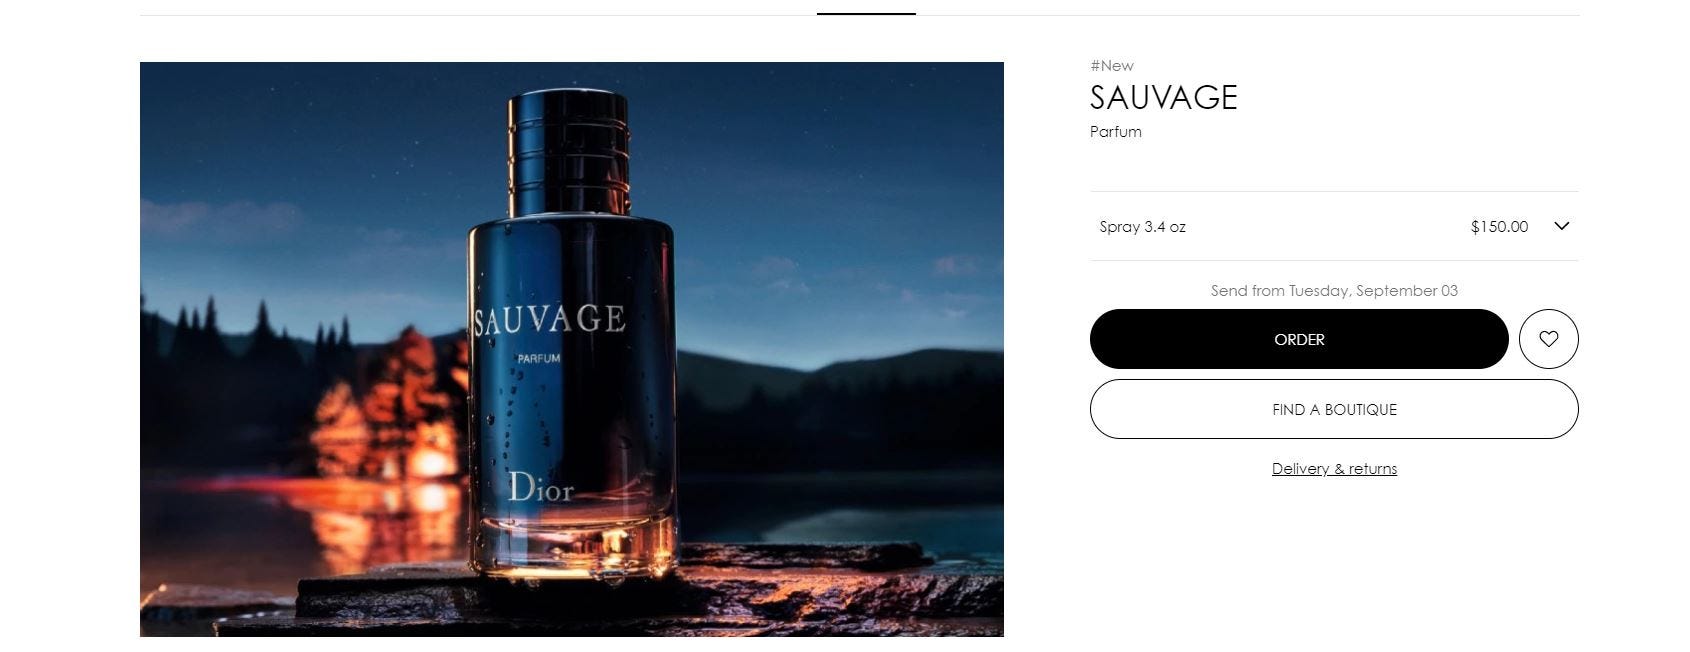 sauvage perfume ad